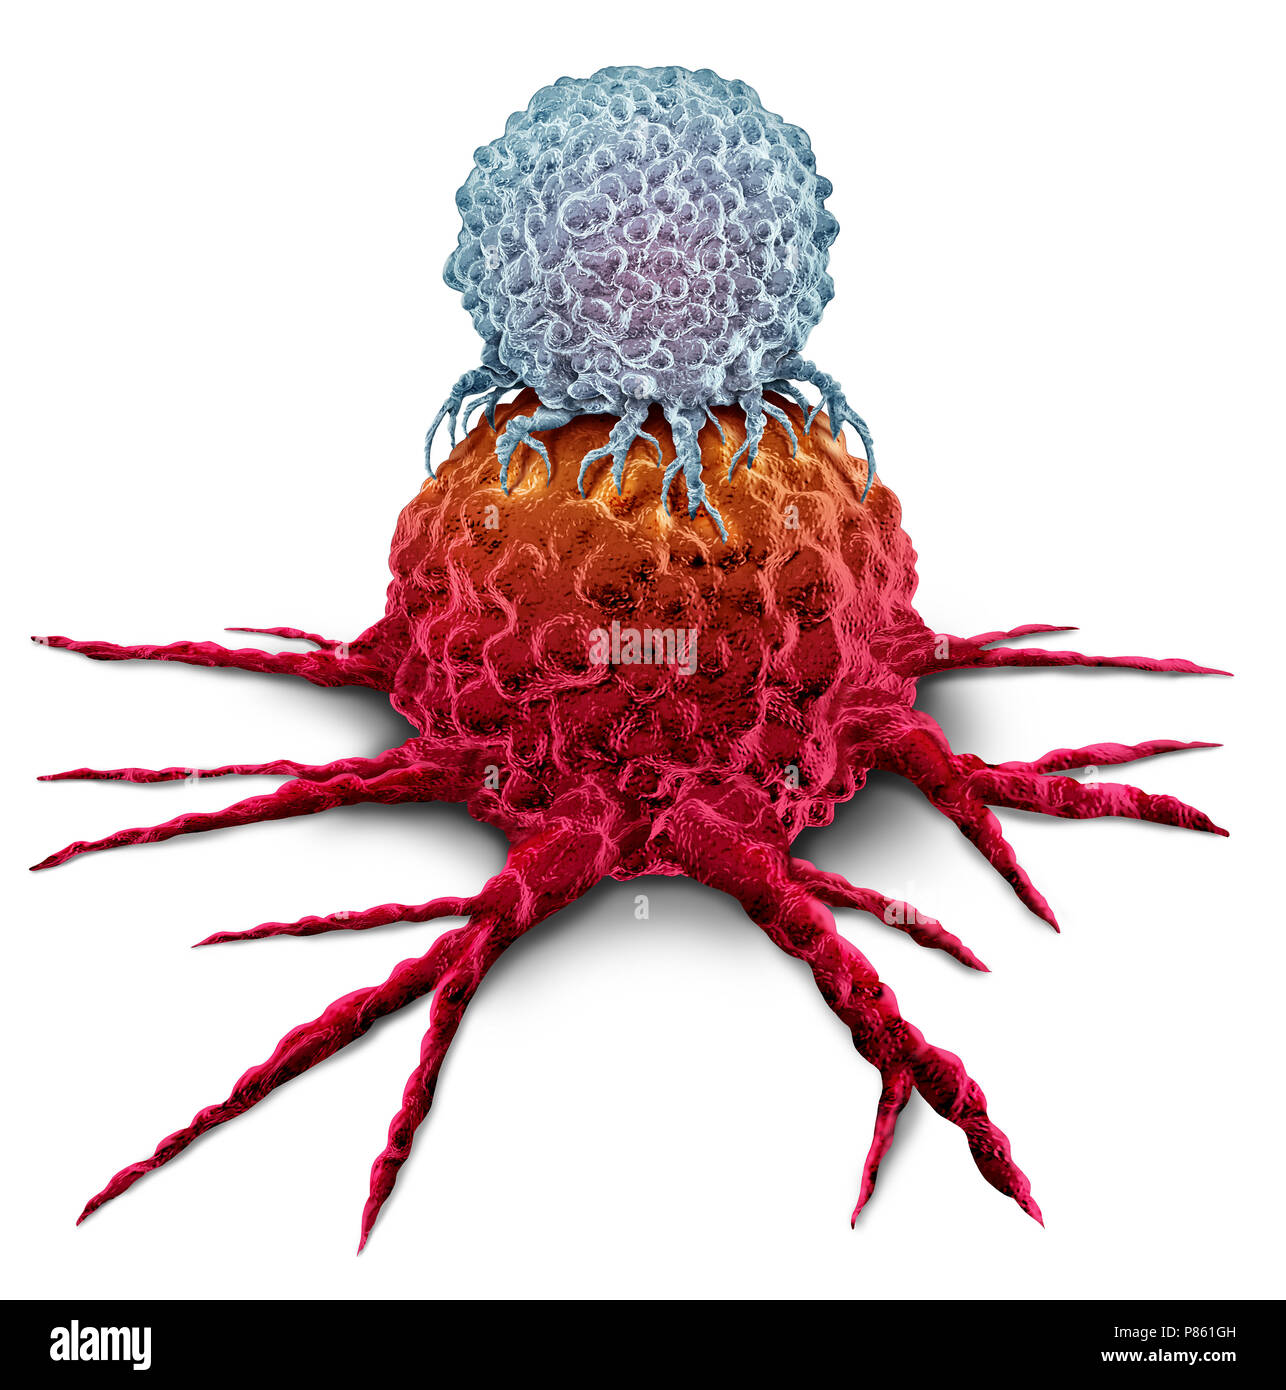 Cellula T che attacca un cancro tumore come immunoterapia sistema immunitario concetto di terapia come biomedici o biomedicina trattamento oncologico. Foto Stock